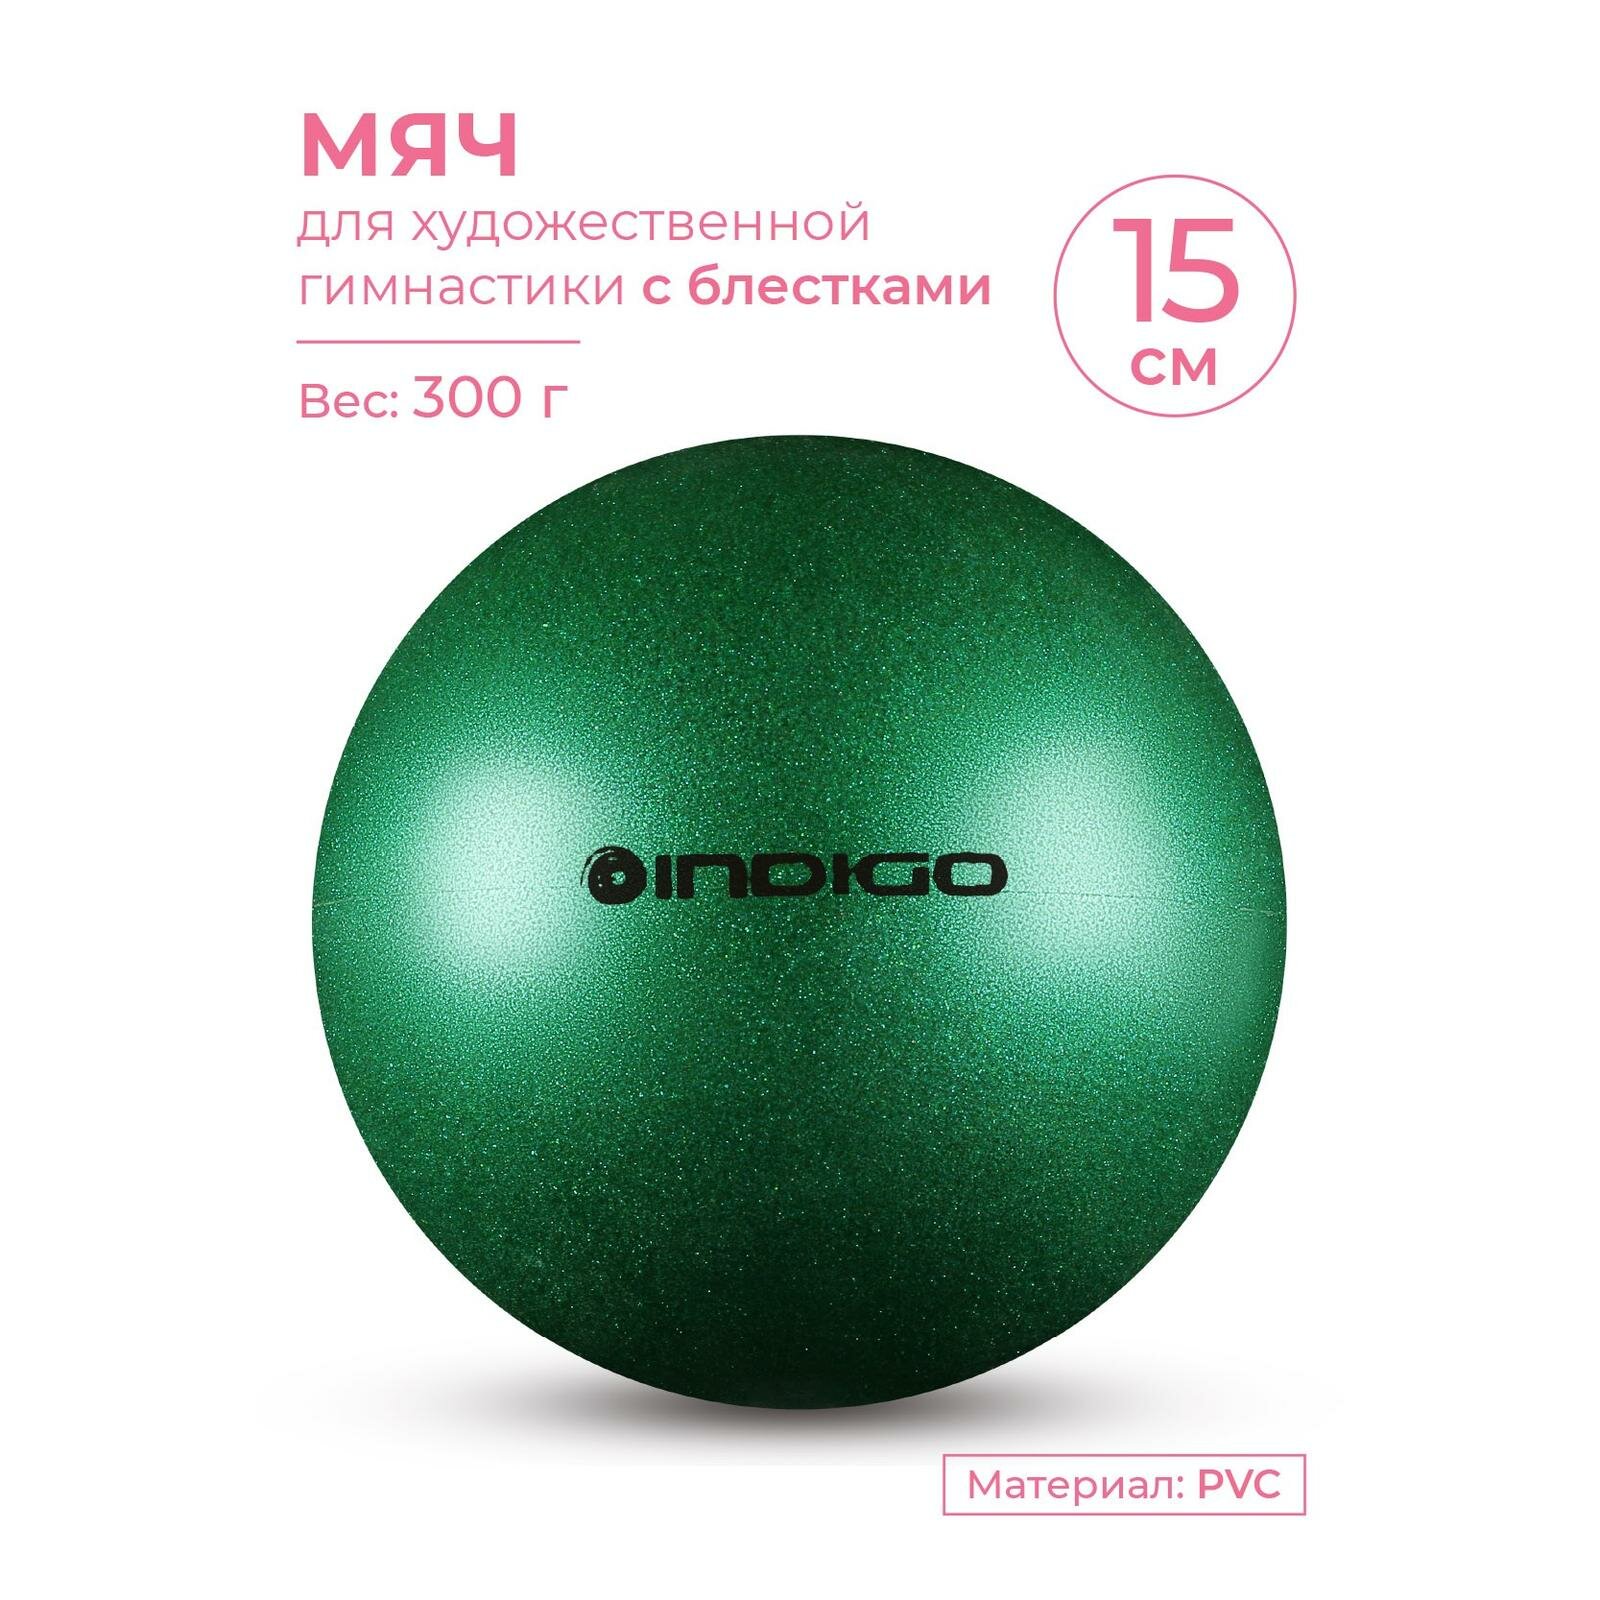 Мяч для художественной гимнастики INDIGO металлик 300 г IN119 Зеленый с блетками 15 см